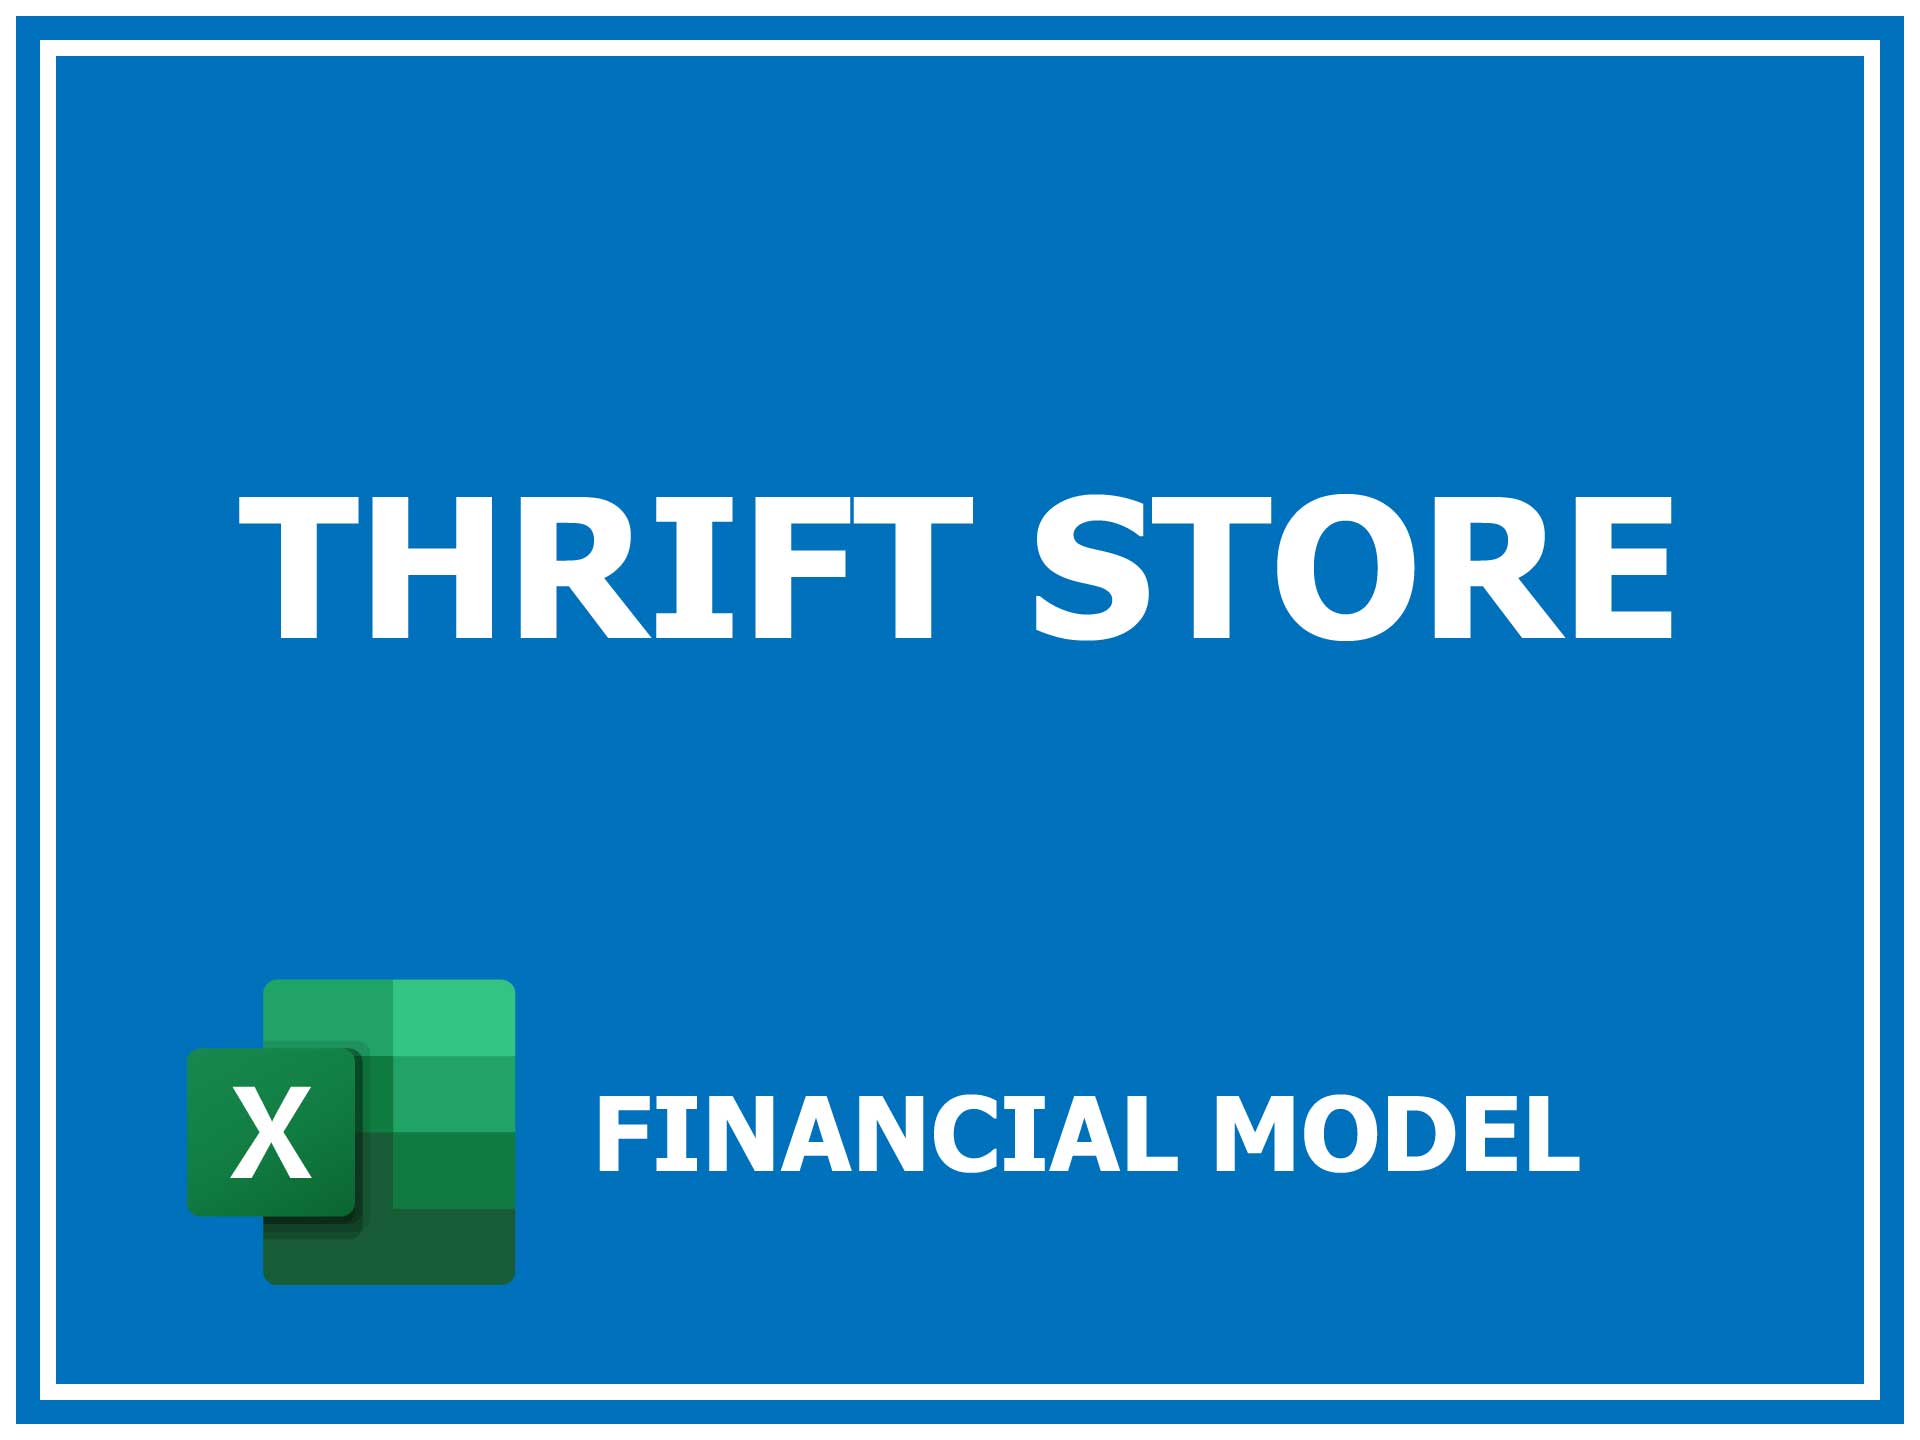 a thrift store business plan